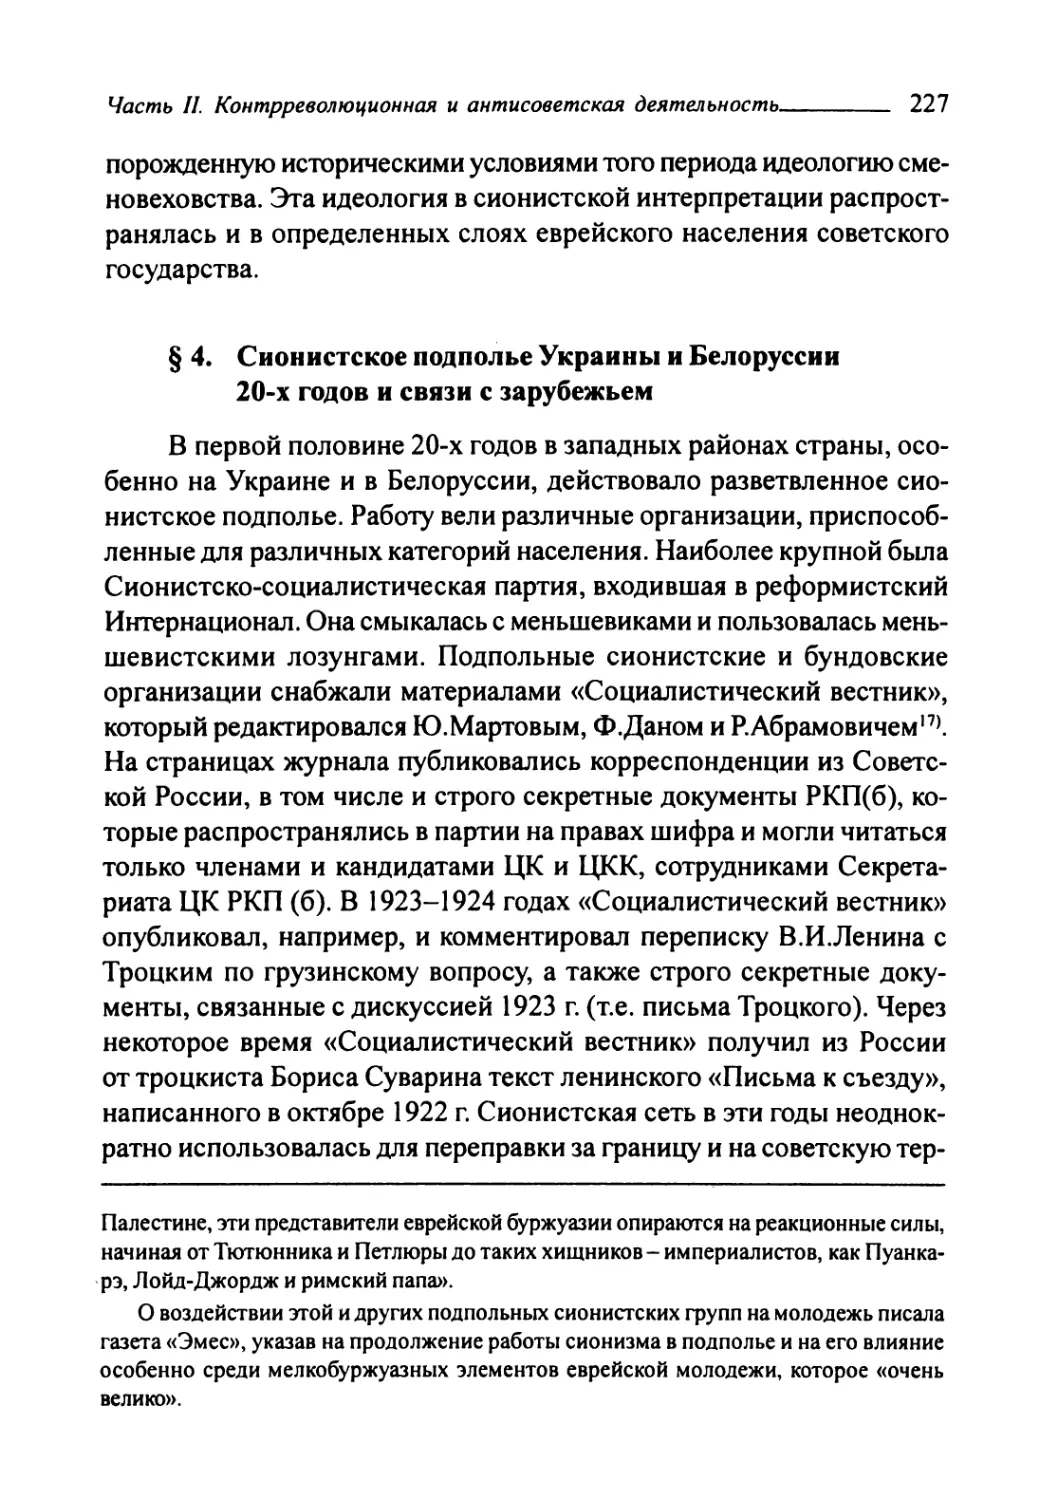 § 4. Сионистское подполье Украины и Белоруссии 20-х годов и связи с зарубежьем